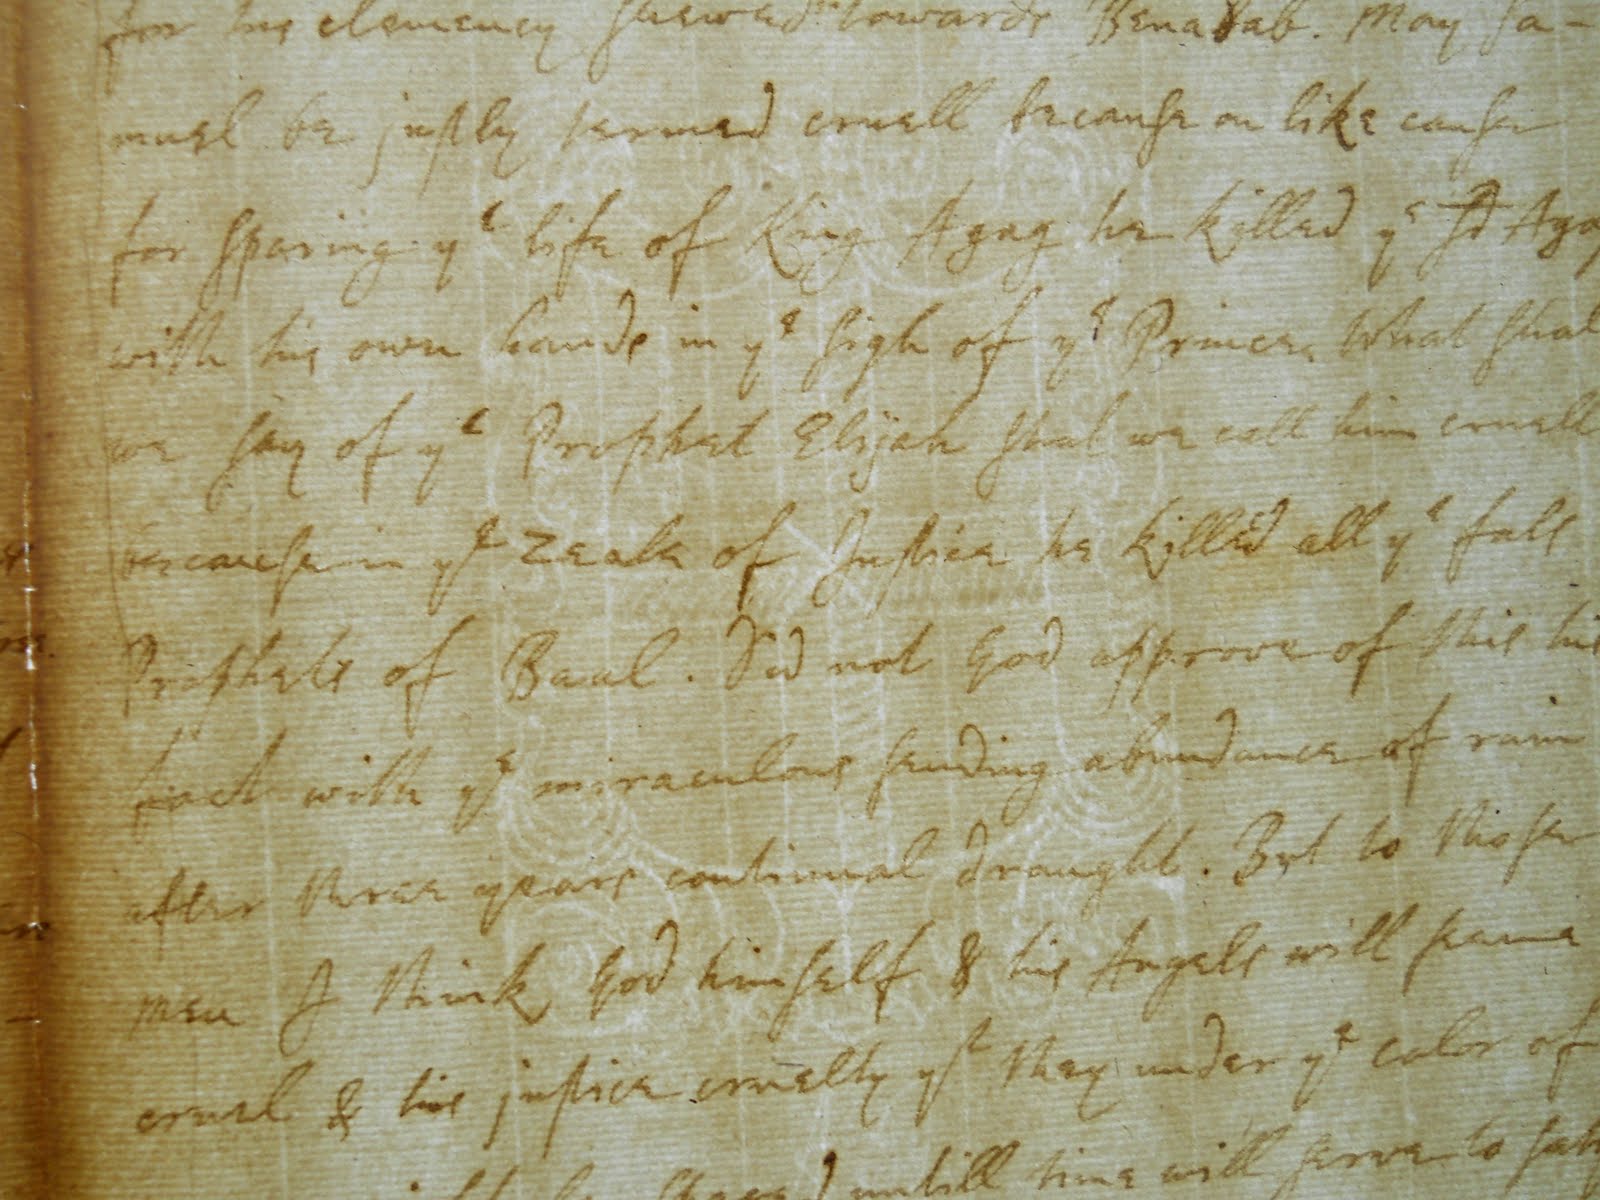 Handwritten manuscript excerpt